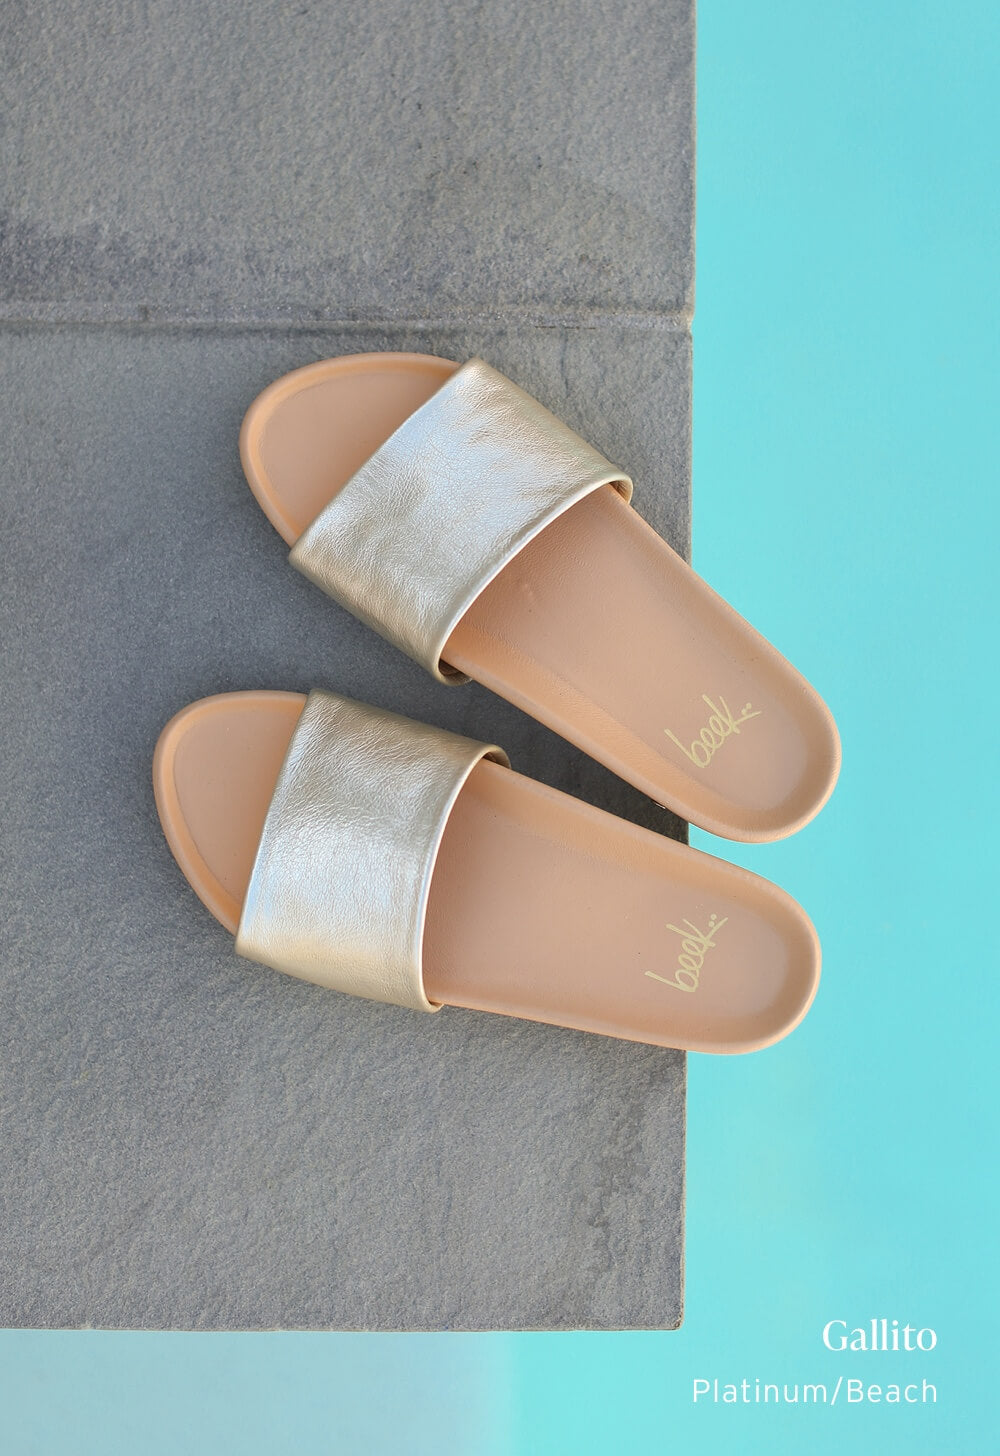 Gallito leather slide sandals in platinum/beach